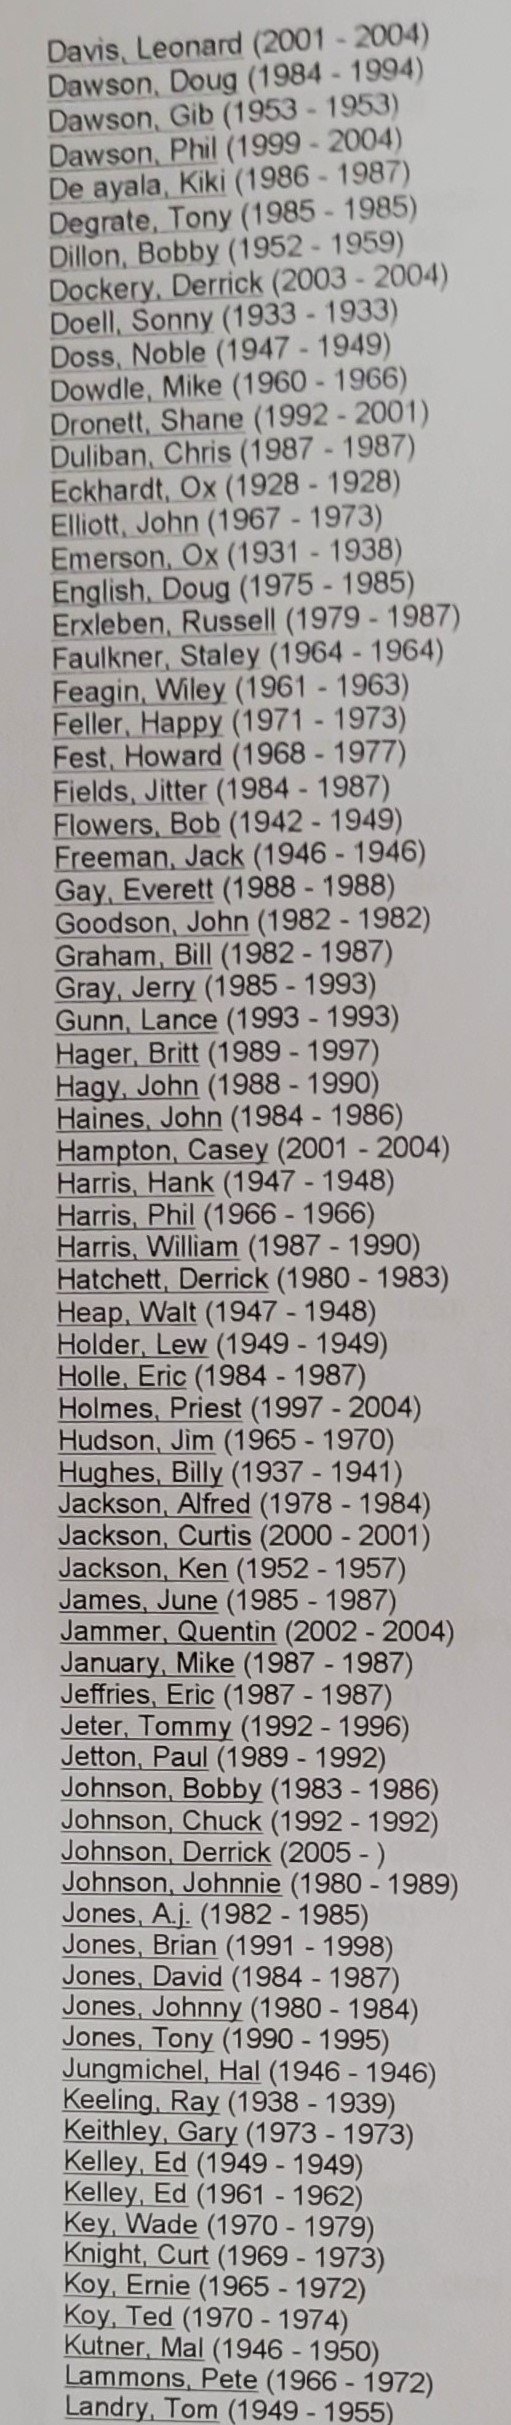 Longhorn NFL players  (18).jpg